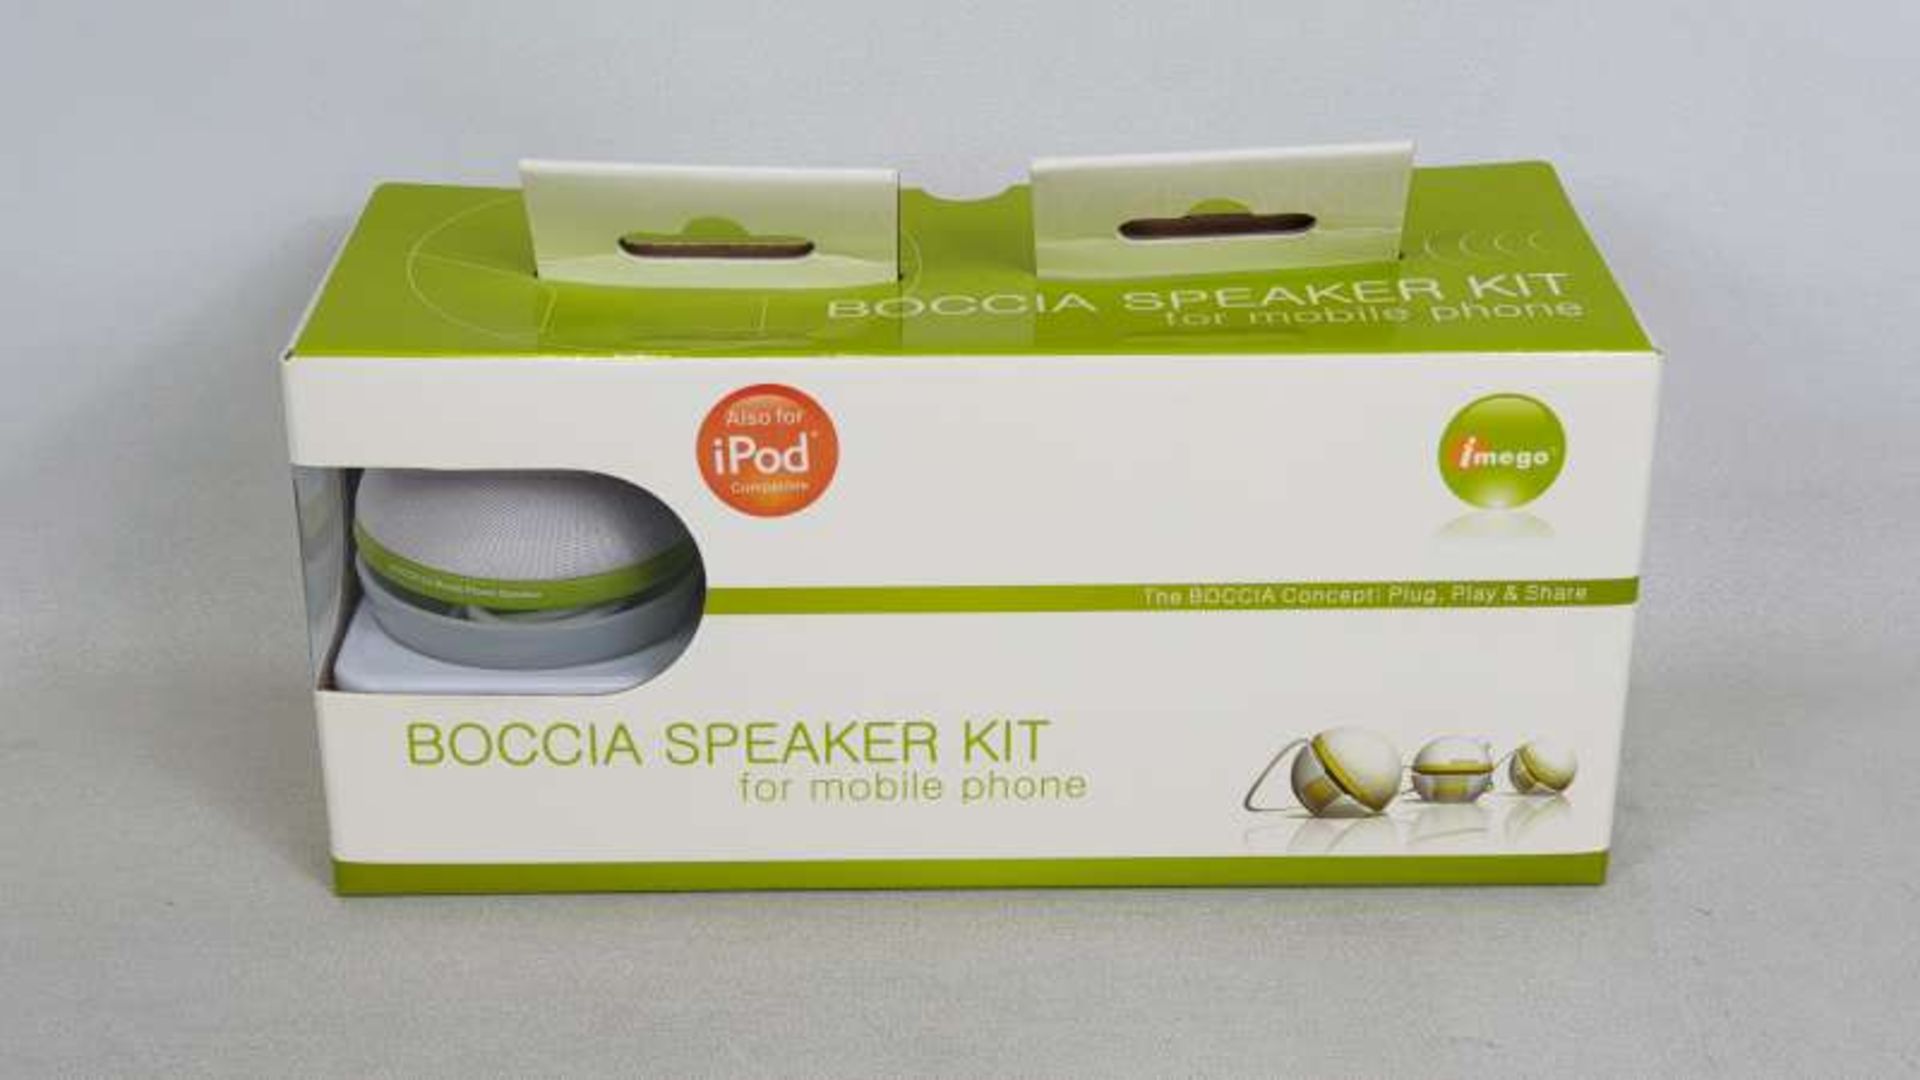 12 X IMEGO BOCCIA SPEAKER KITS FOR MOBILE PHONES IN 1 BOX